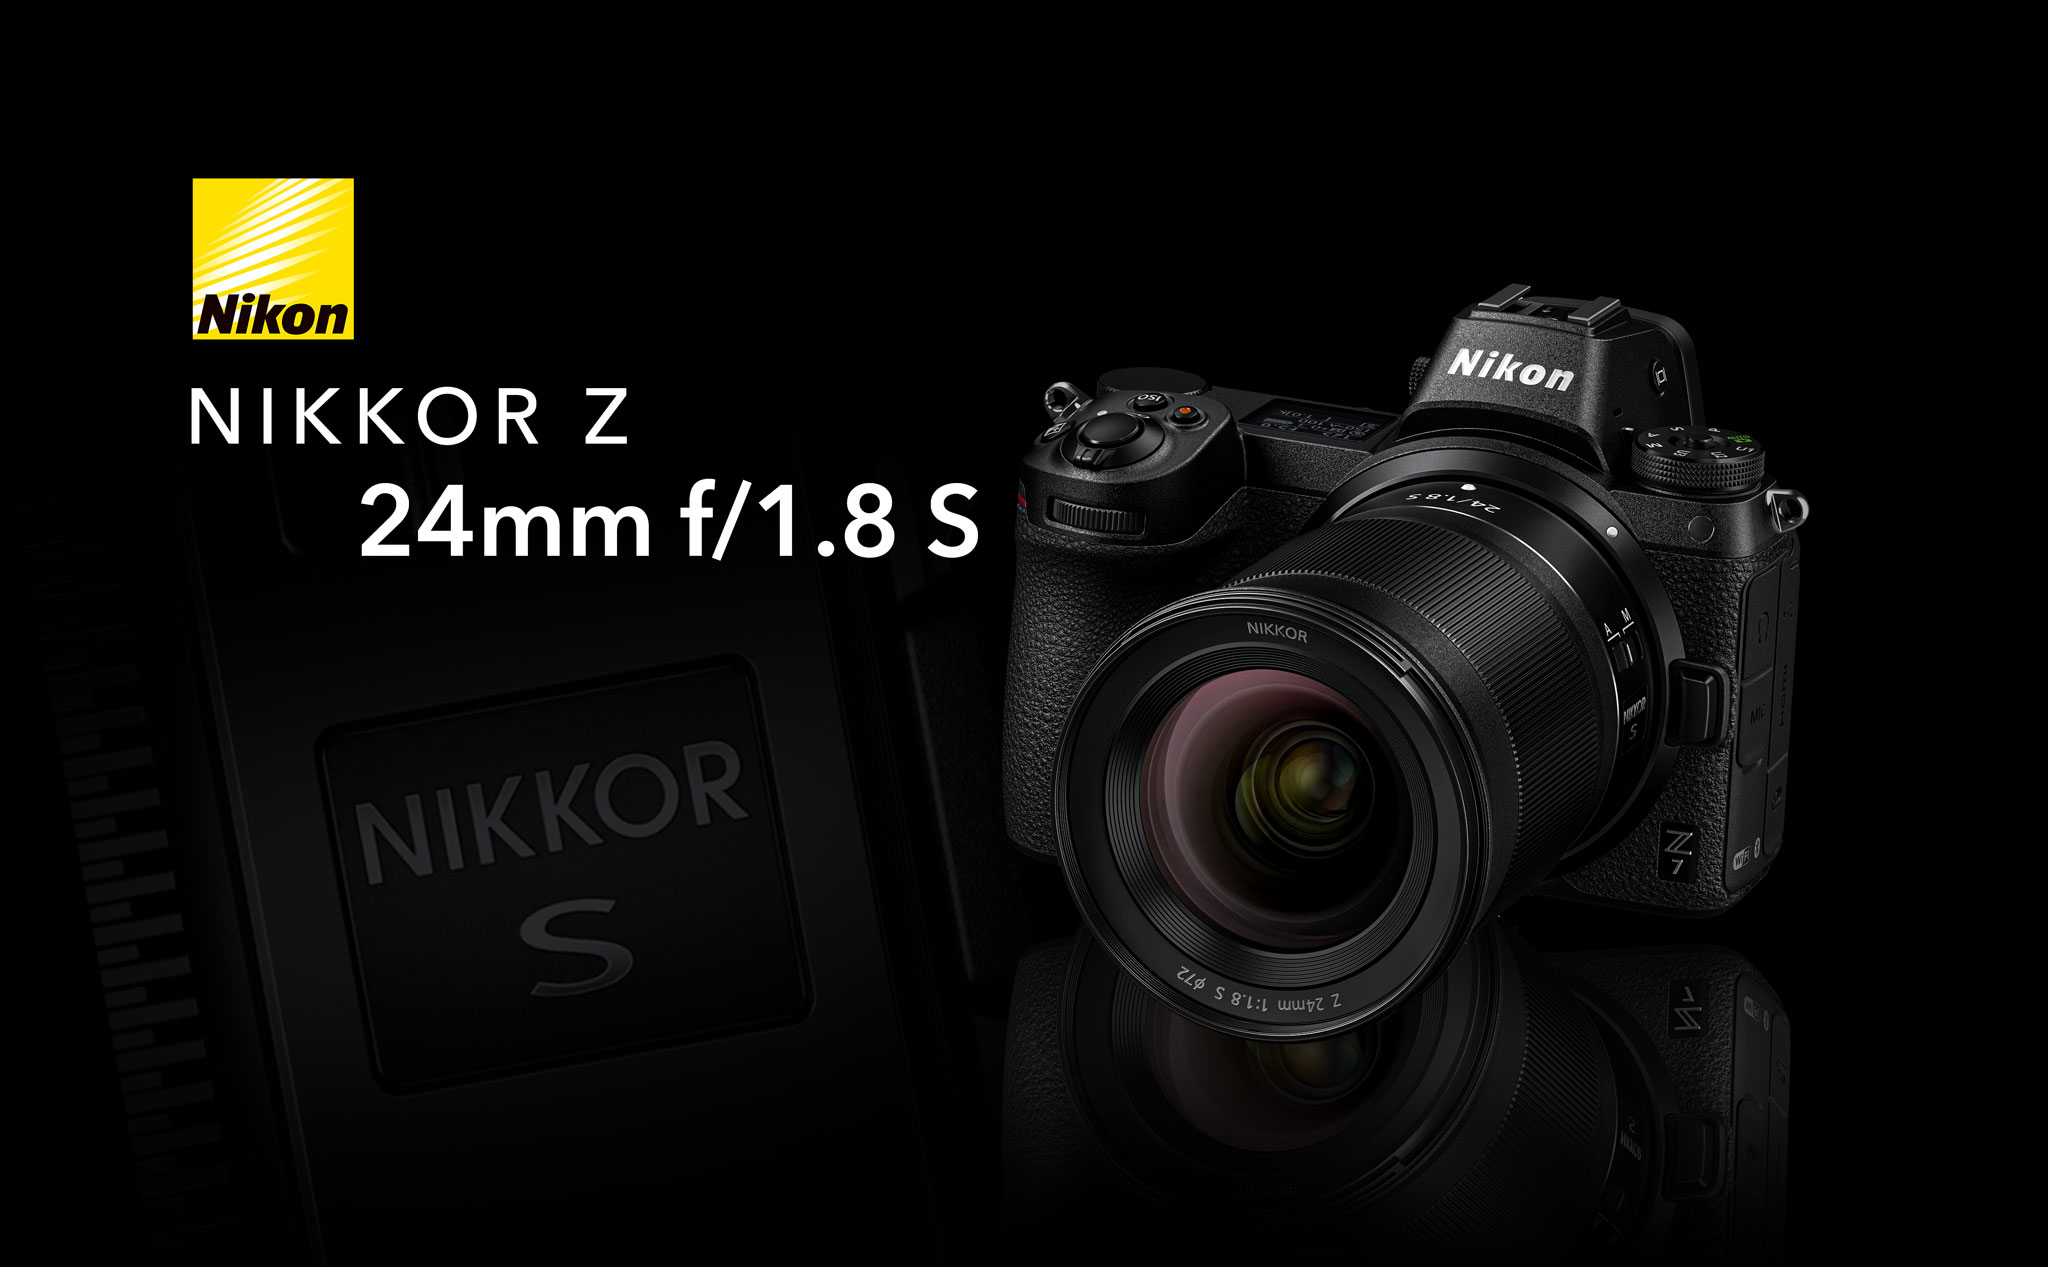 Nikon công bố ống kính Nikkor Z 24mm f/1.8 S: gọn nhẹ, chất lượng quang học cao, giá 997 USD